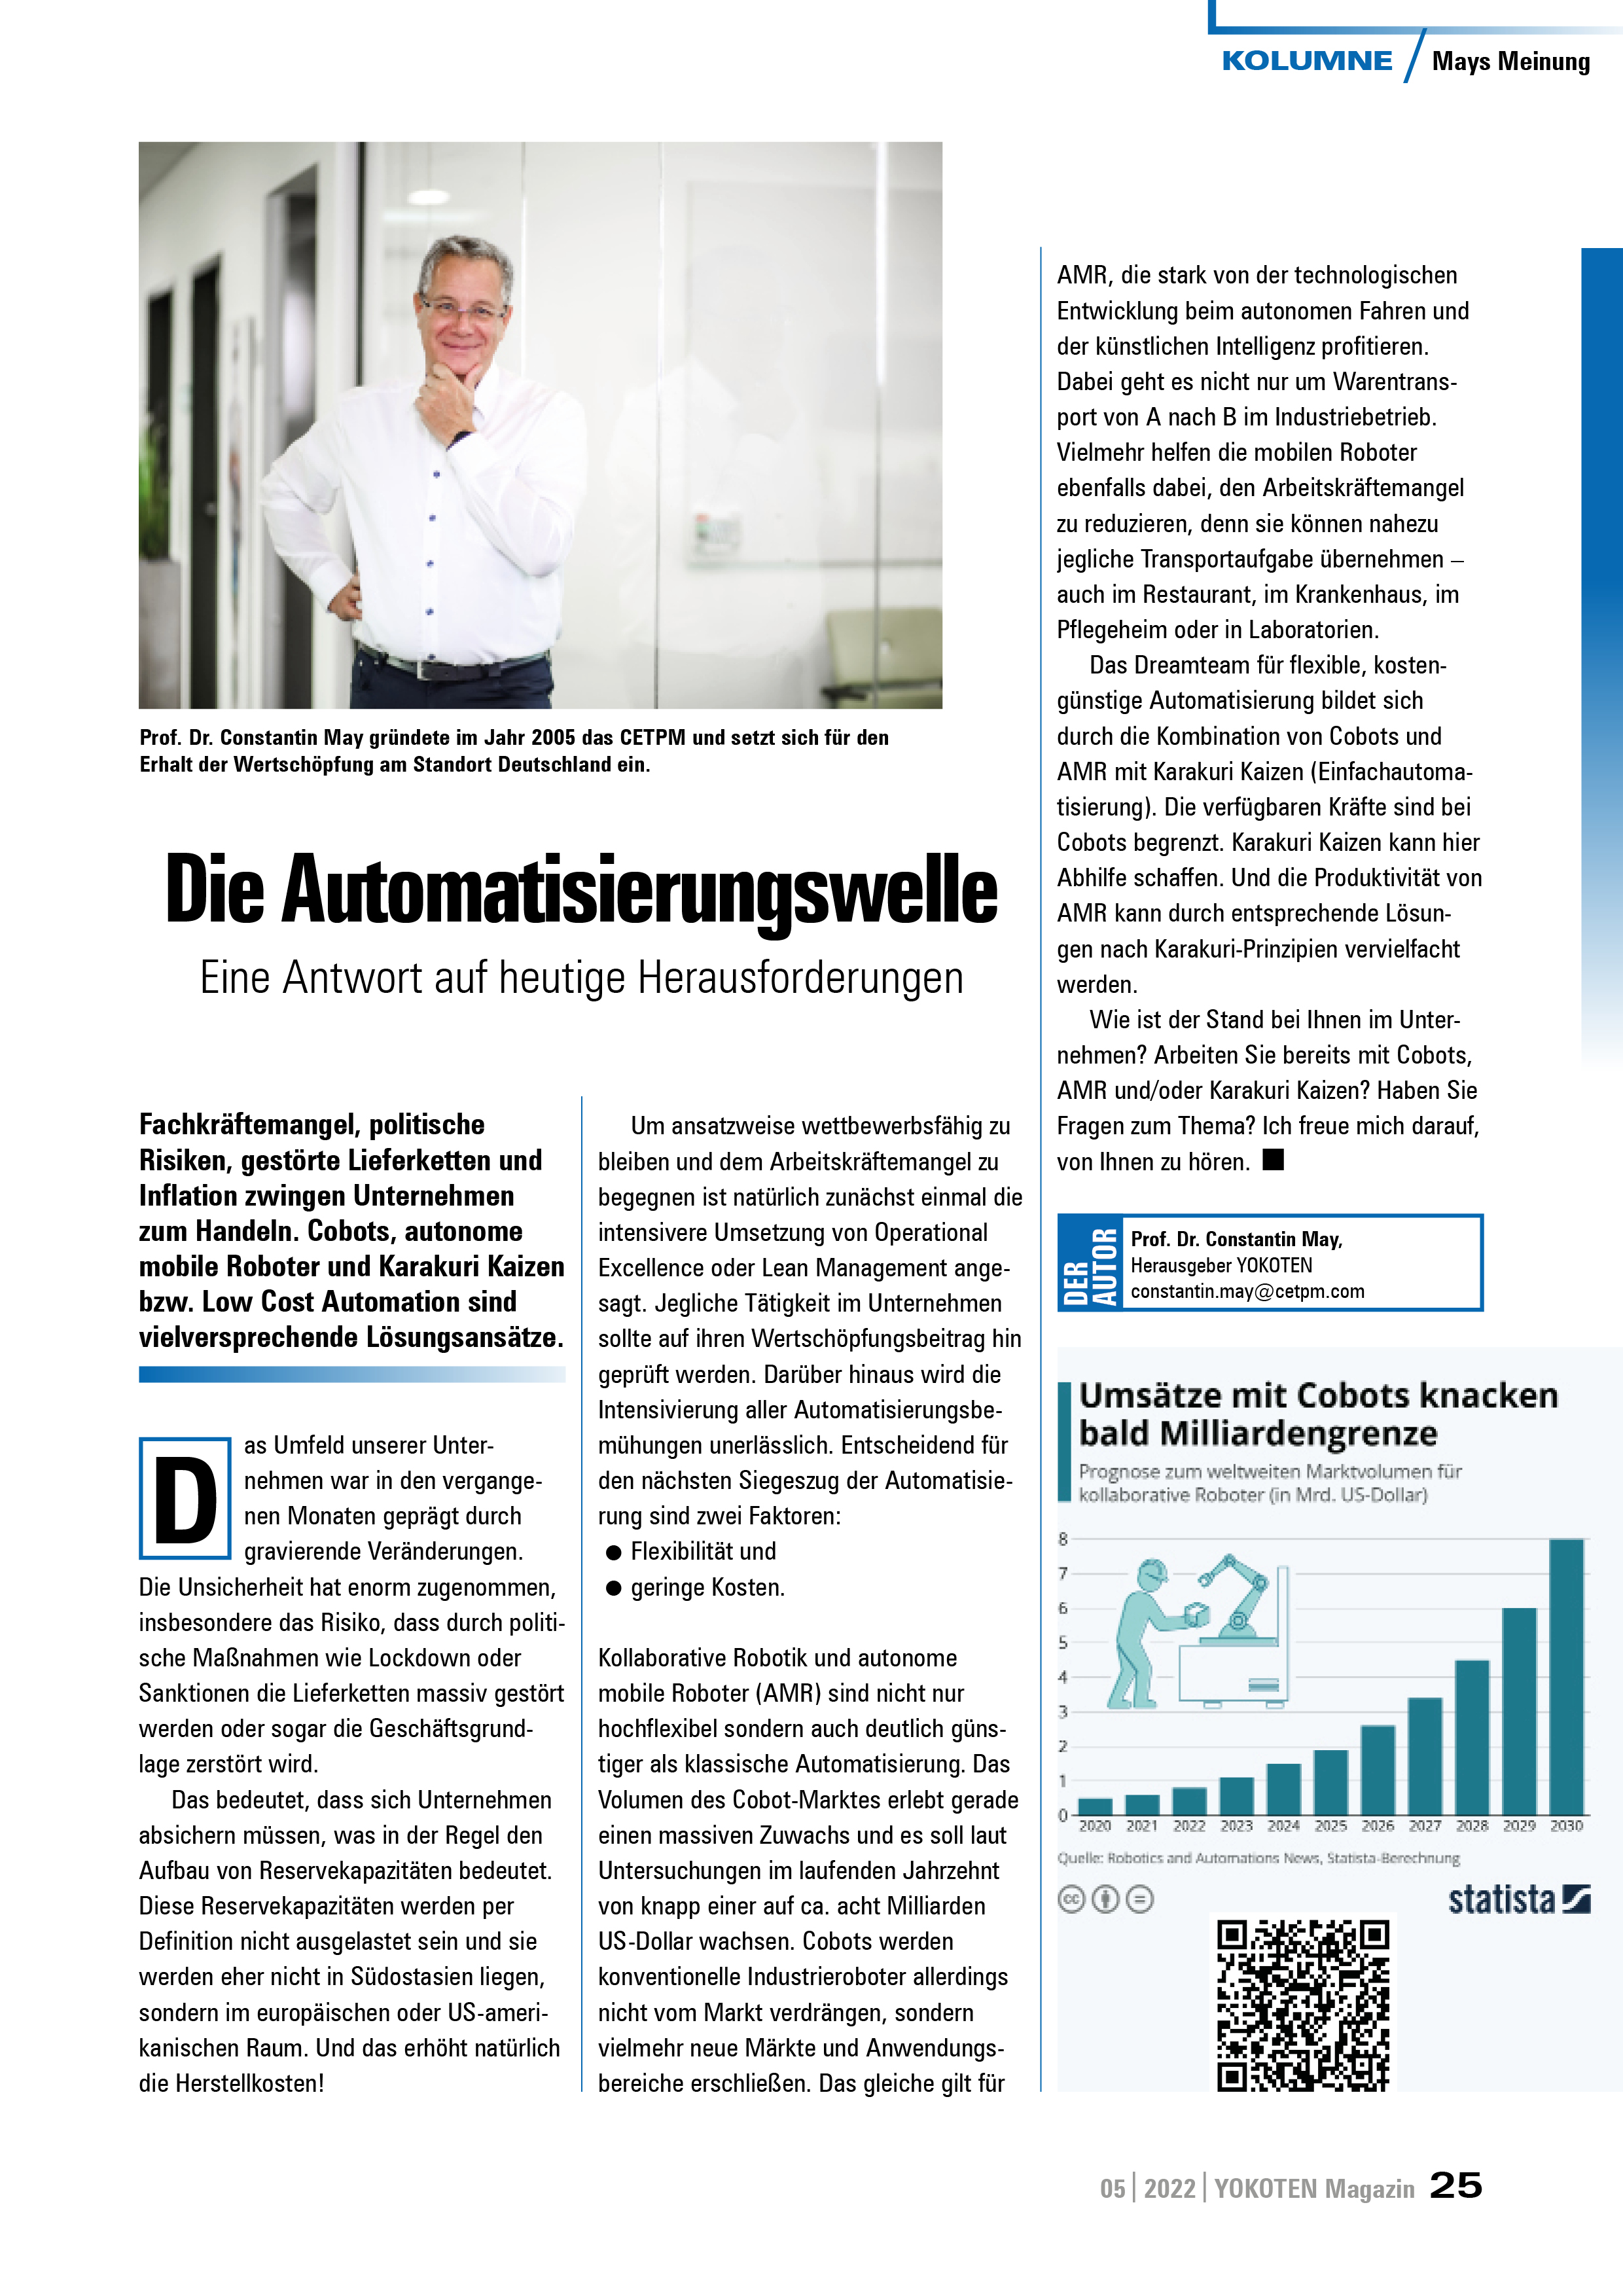 Die Automatisierungswelle - Artikel aus Fachmagazin YOKOTEN 2022-05